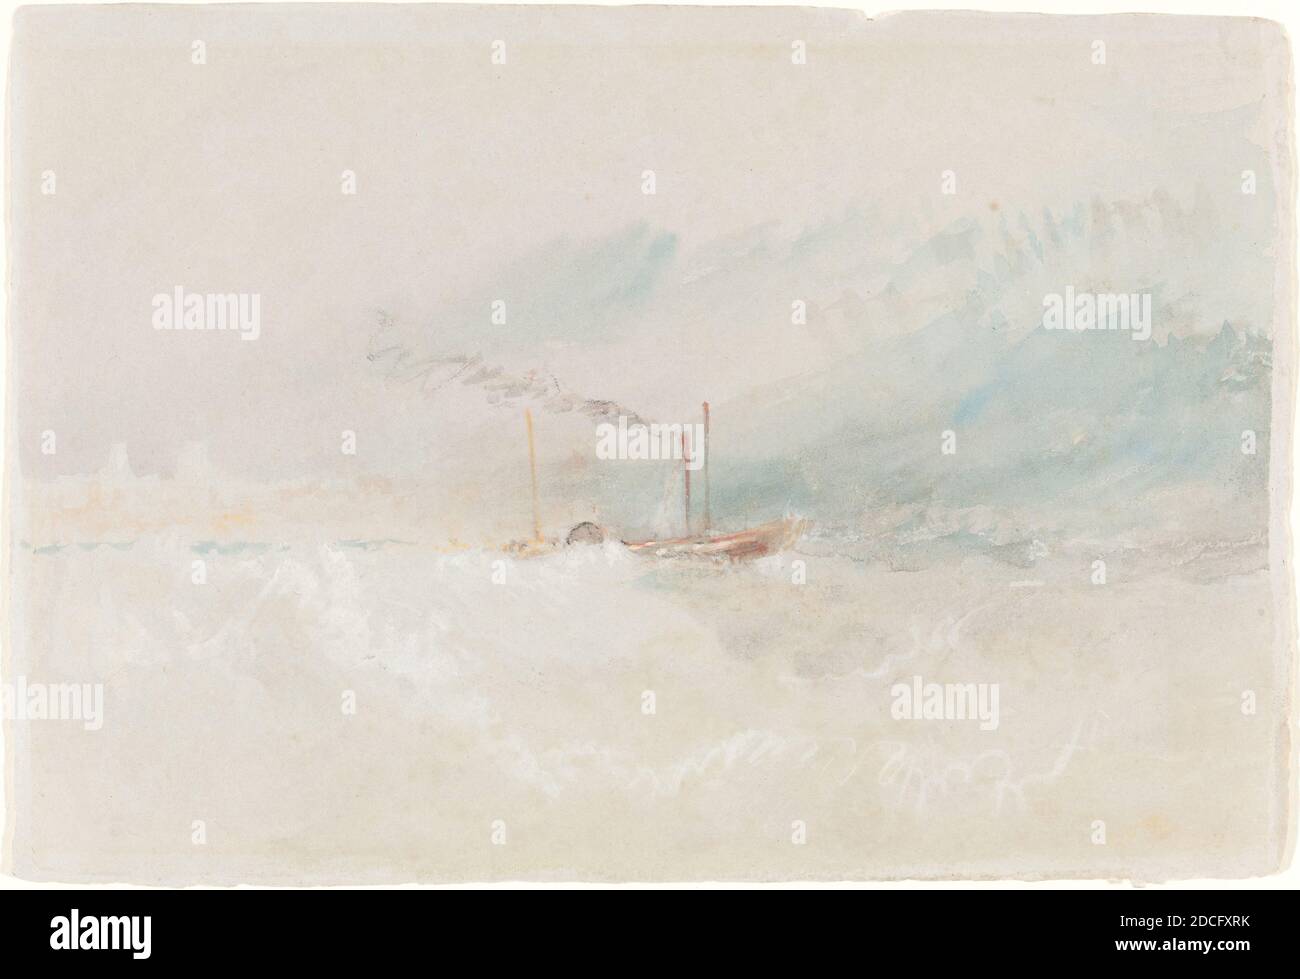 Joseph Mallord William Turner, (artiste), British, 1775 - 1851, A Packet Boat off Dover, c. 1836, aquarelle et gouache avec des touches de craie noire sur papier vélin gris, cousu, total: 19.1 x 27.8 cm (7 1/2 x 10 15/16 po Banque D'Images